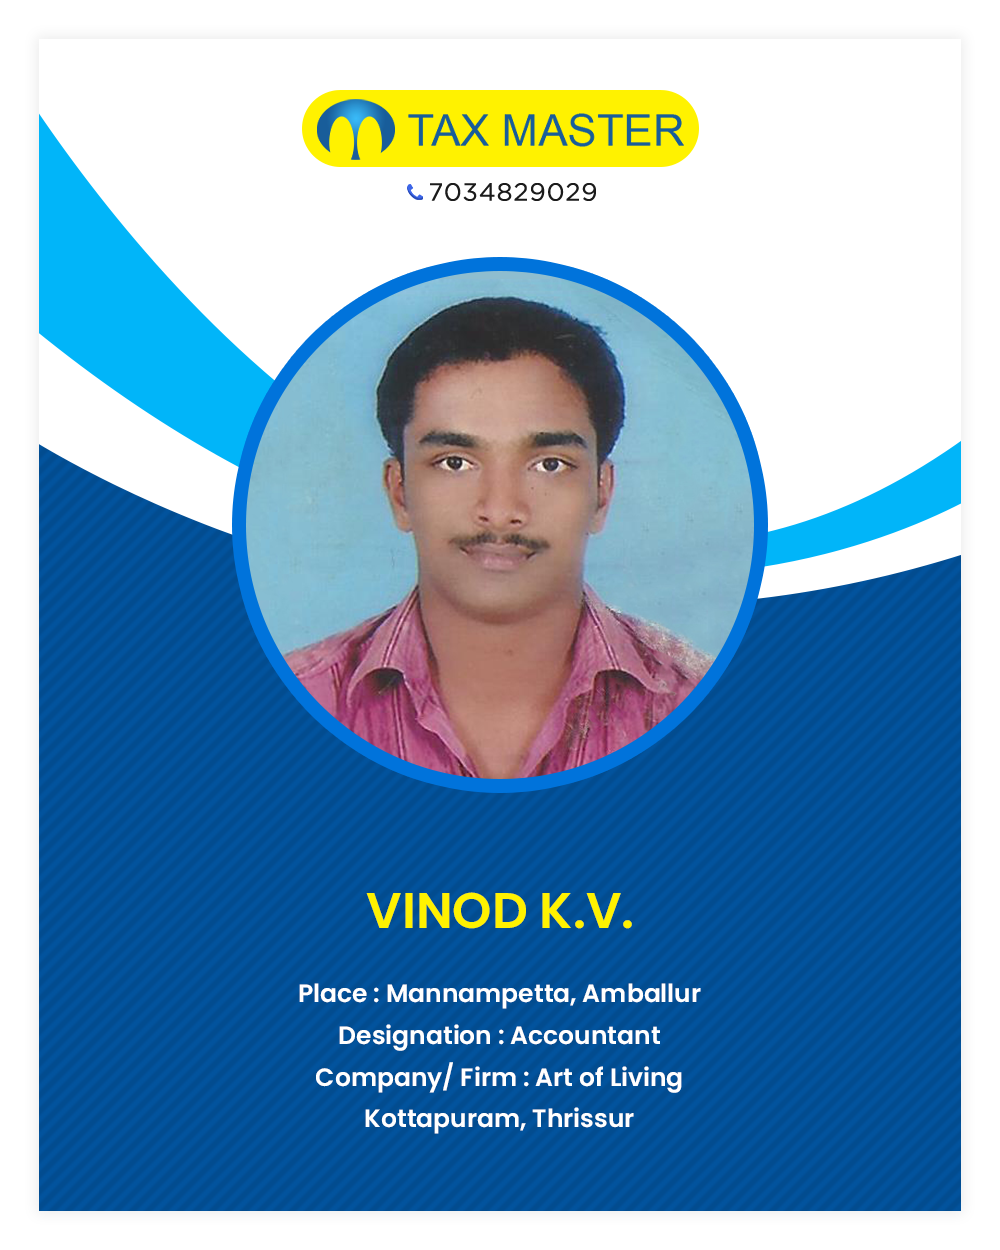 Vinod TDS services in thrissur